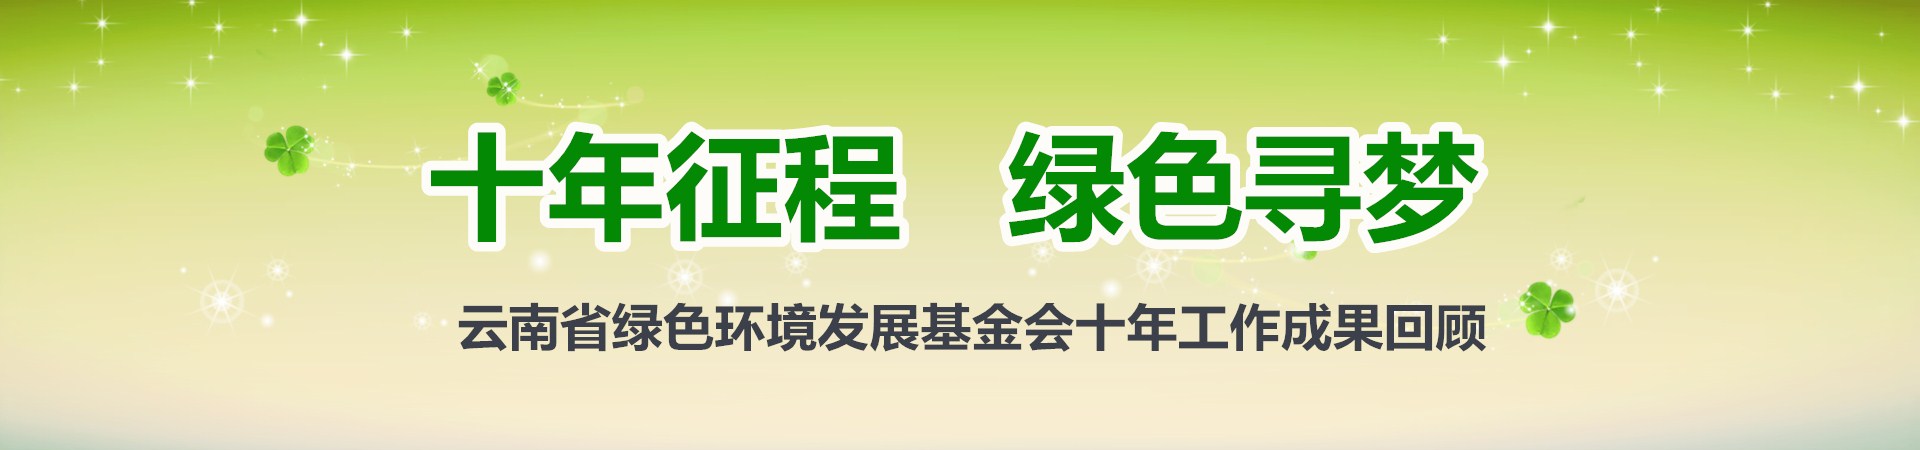 云南省绿色环境发展基金会十年成果回顾